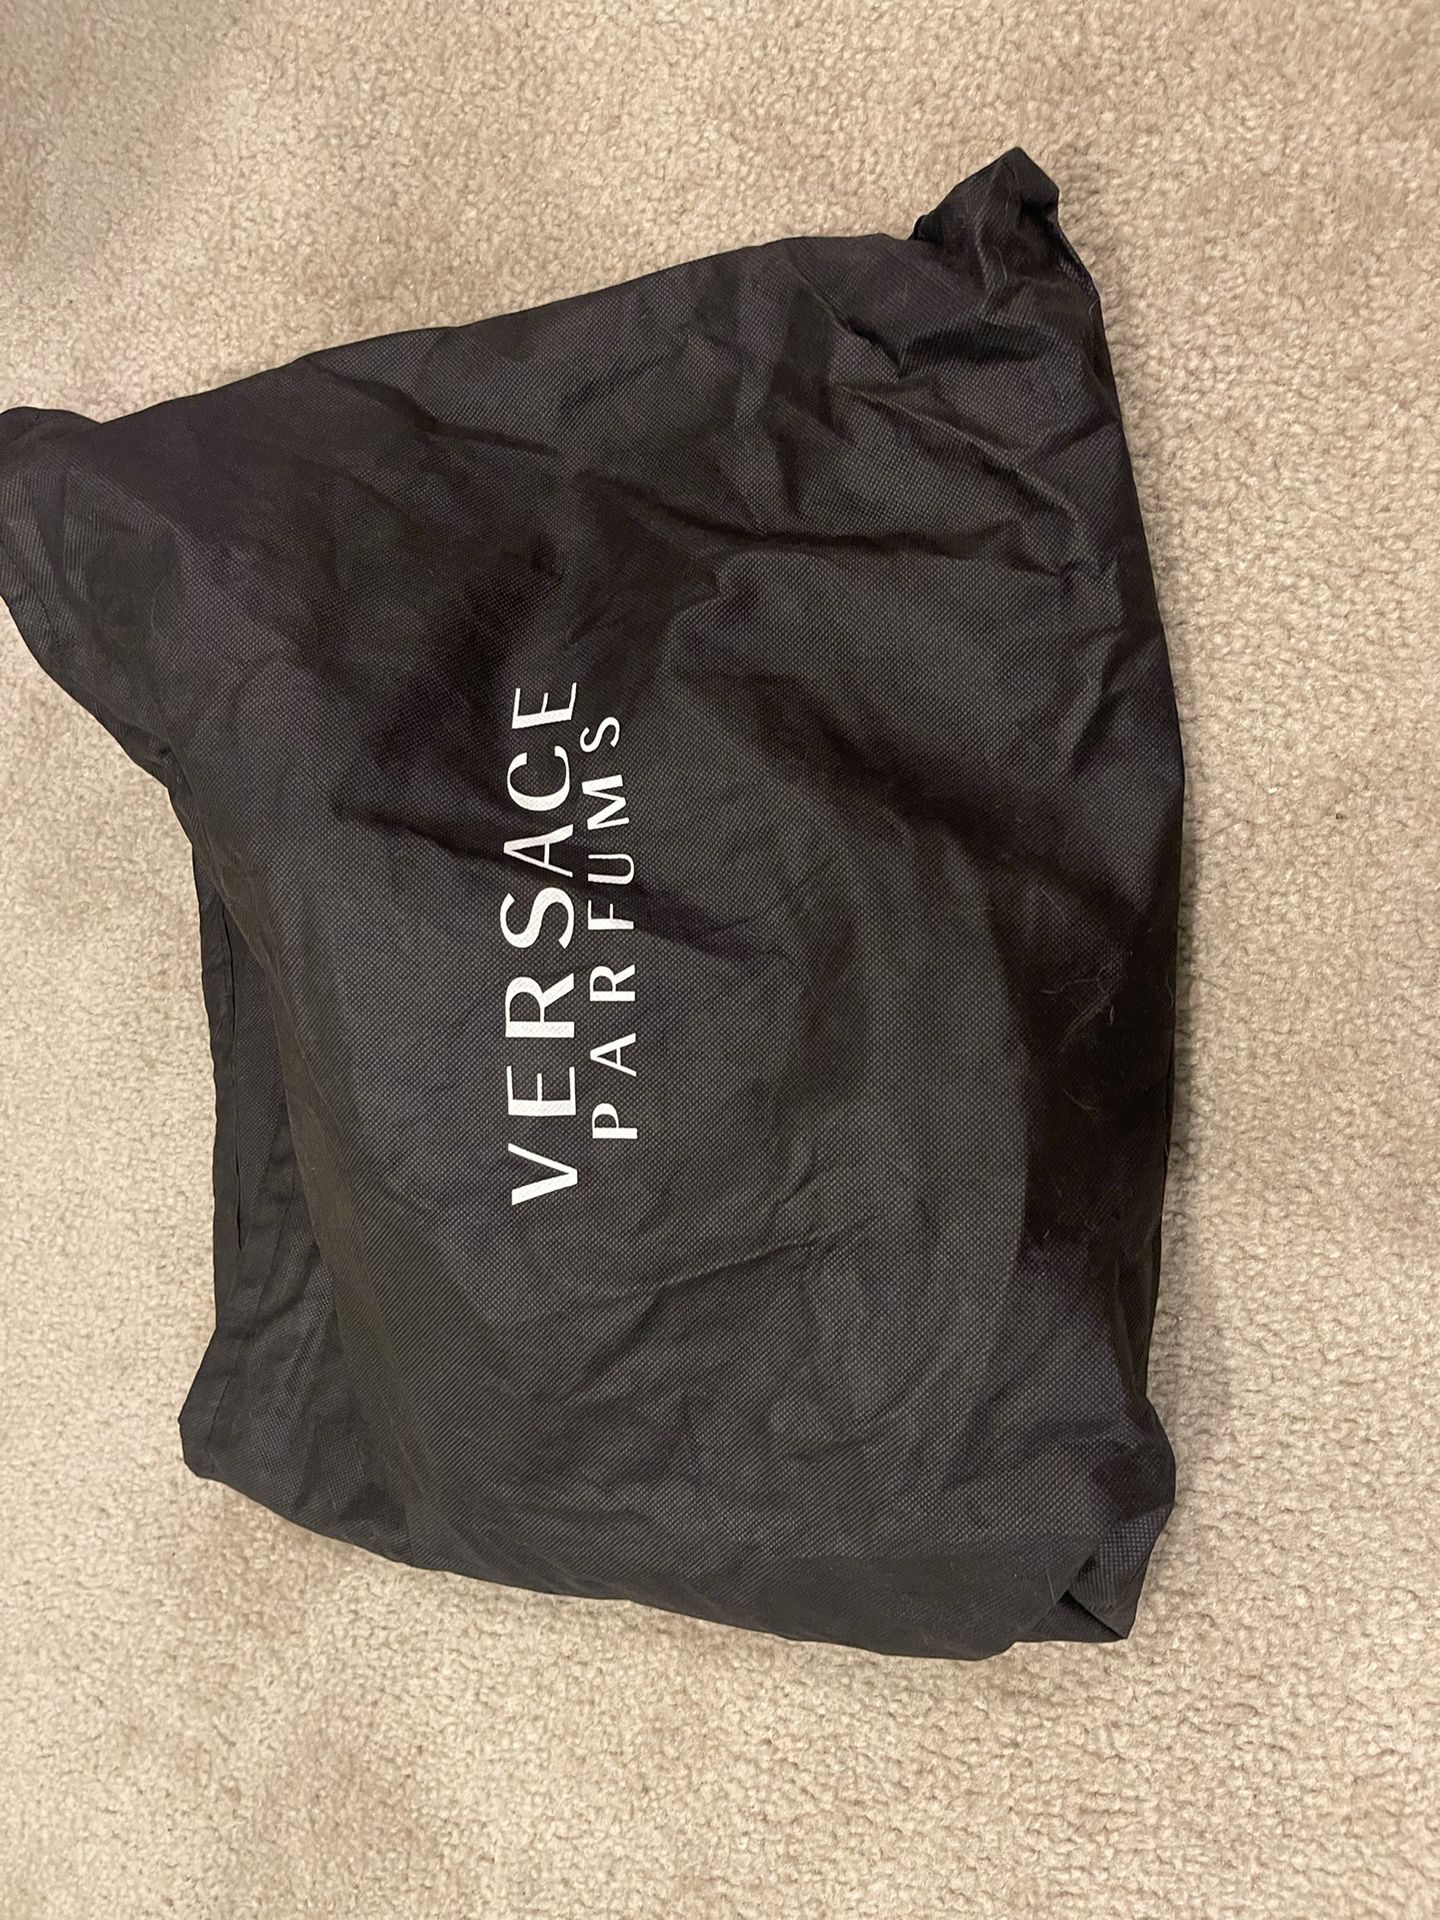 Versace, Ralph Lauren, And Michael Kors Bags For Sale